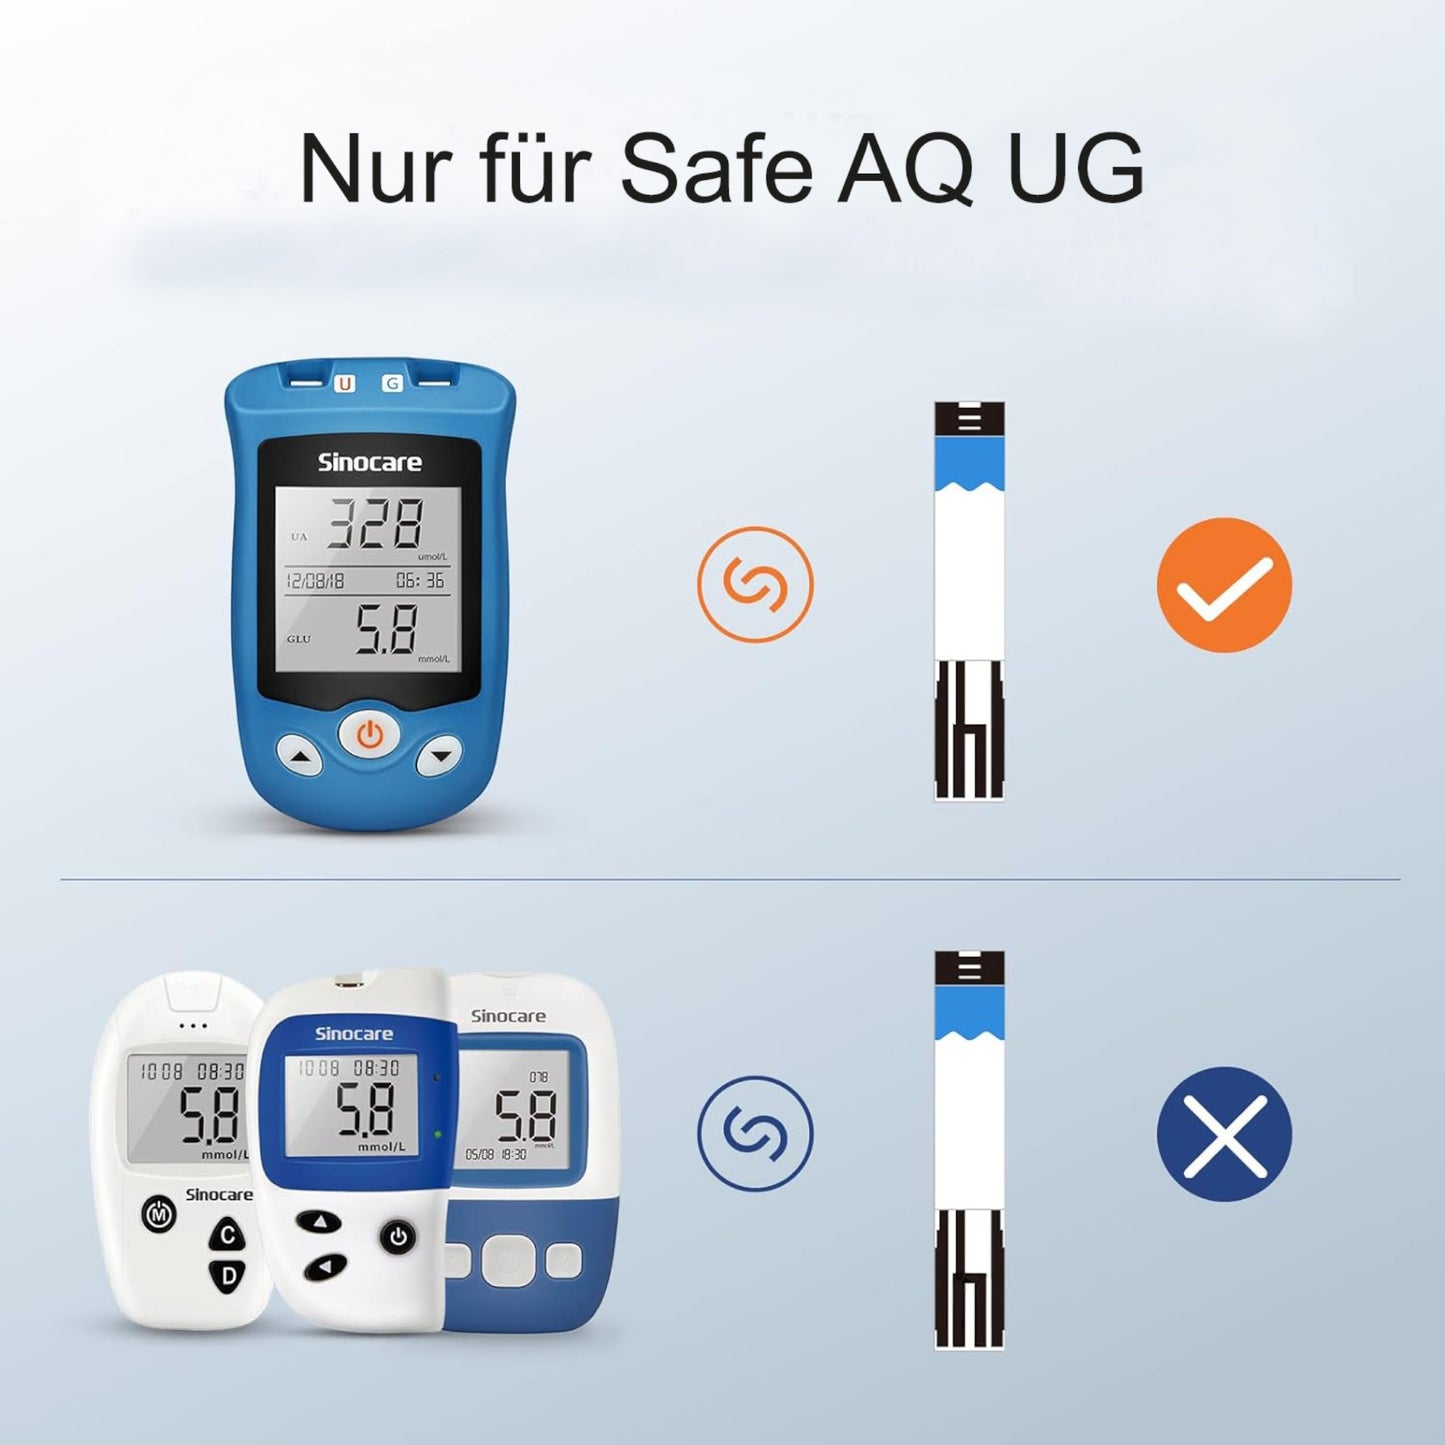 Präzise Blutzuckerteststreifen und Lanzetten für genaue und zuverlässige Messungen mit dem Safe AQ UG Messgerät.